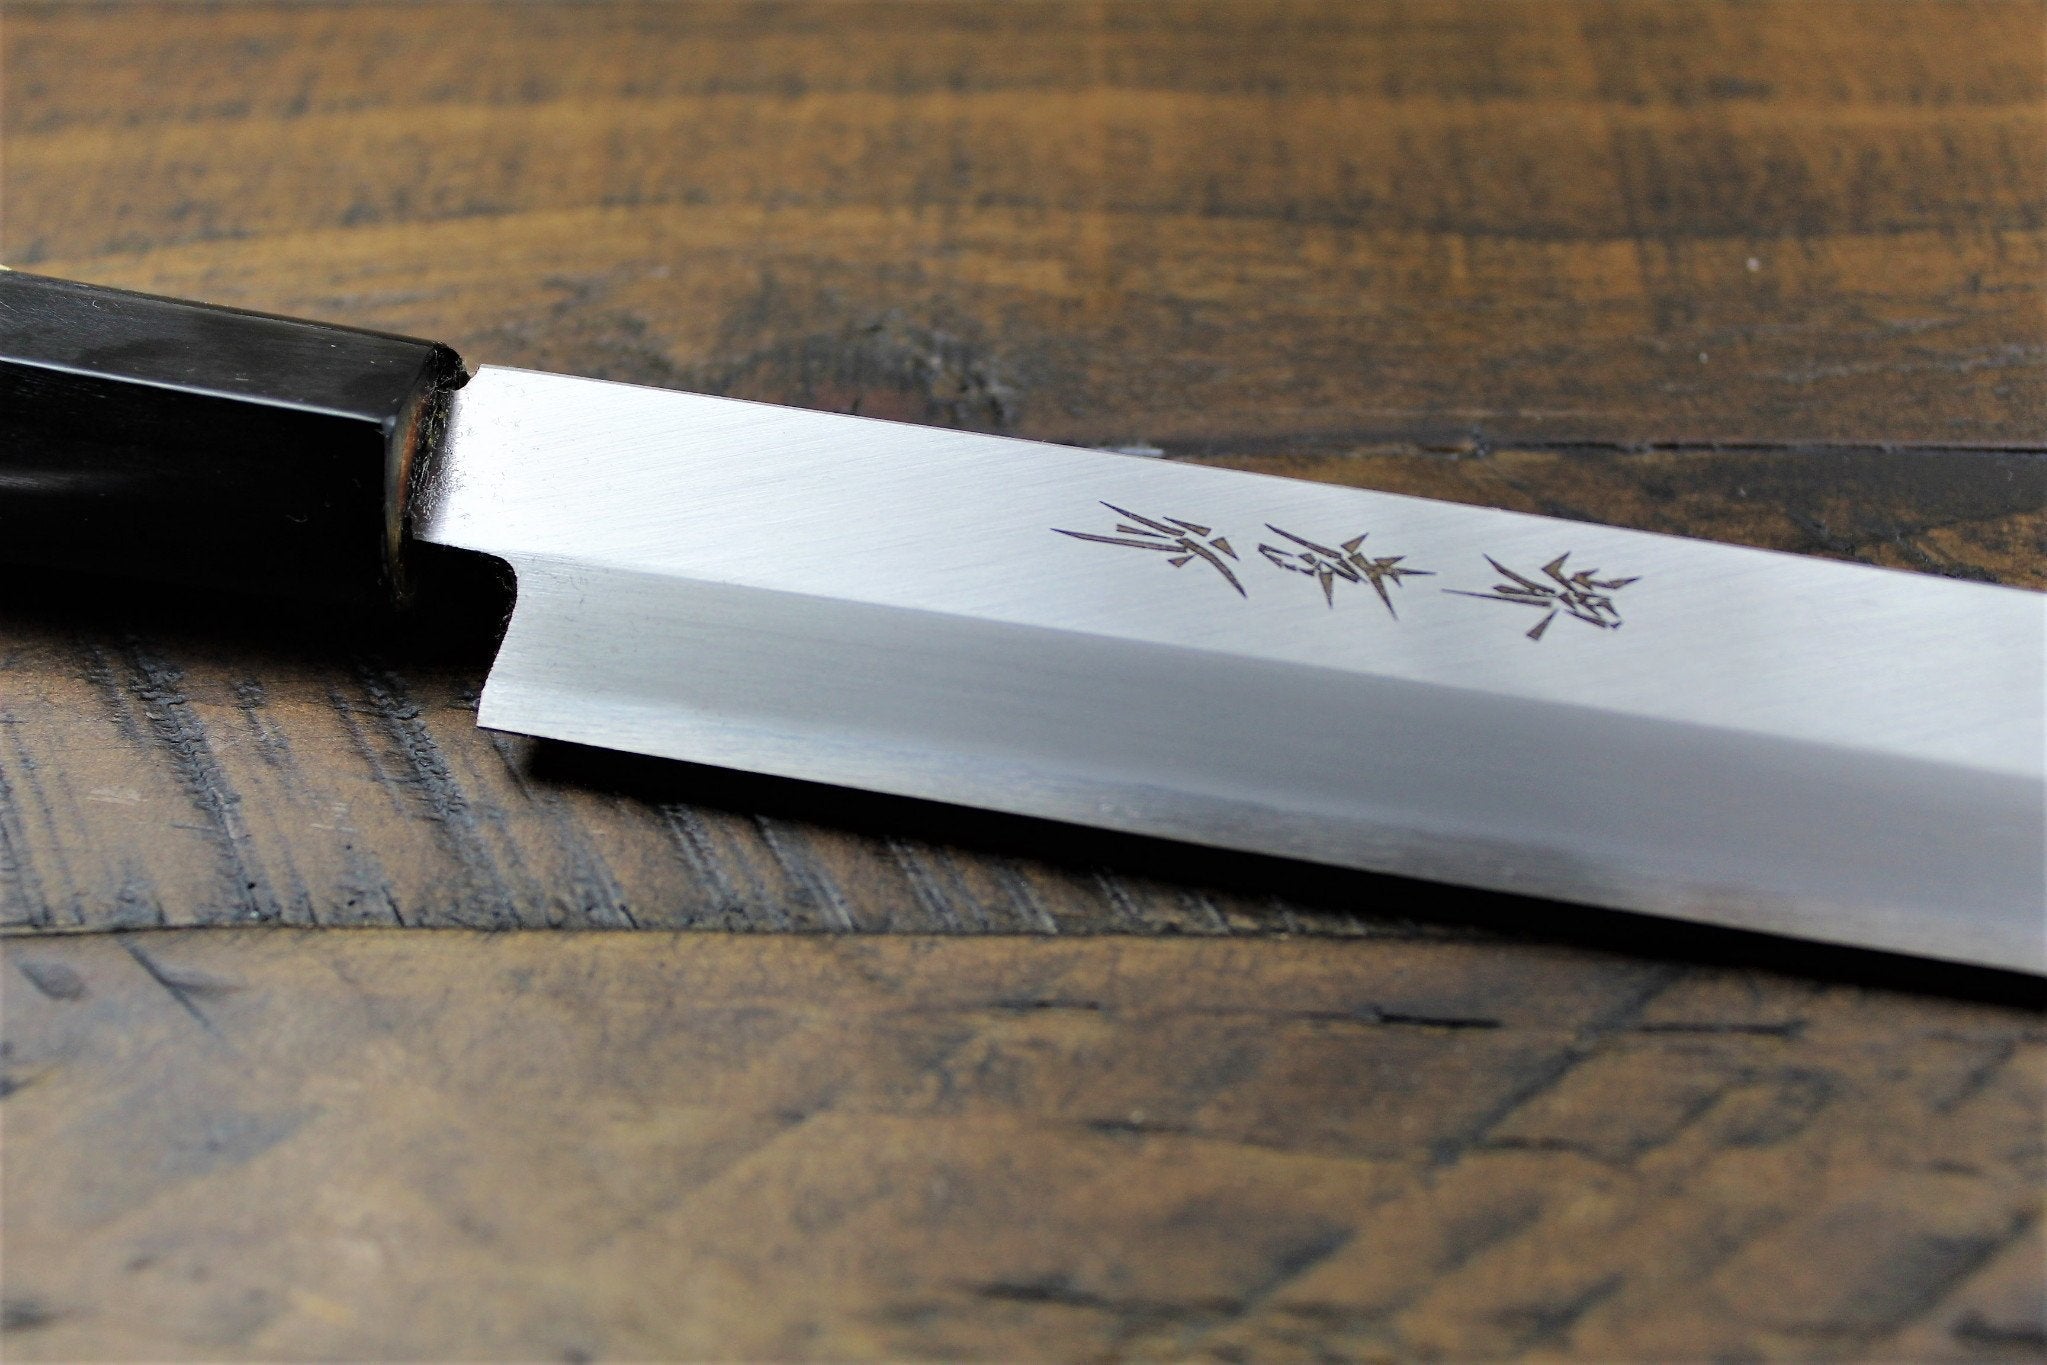 https://hasuseizo.com/cdn/shop/files/kitchen-knives-sakai-takayuki-takohiki-slicer-knife-with-buffalo-horn-handle-white-steel-2-kasumi-togi-sakai-takayuki-3_329c27dd-5531-4032-be8b-296563b140d4_5000x.jpg?v=1698699312